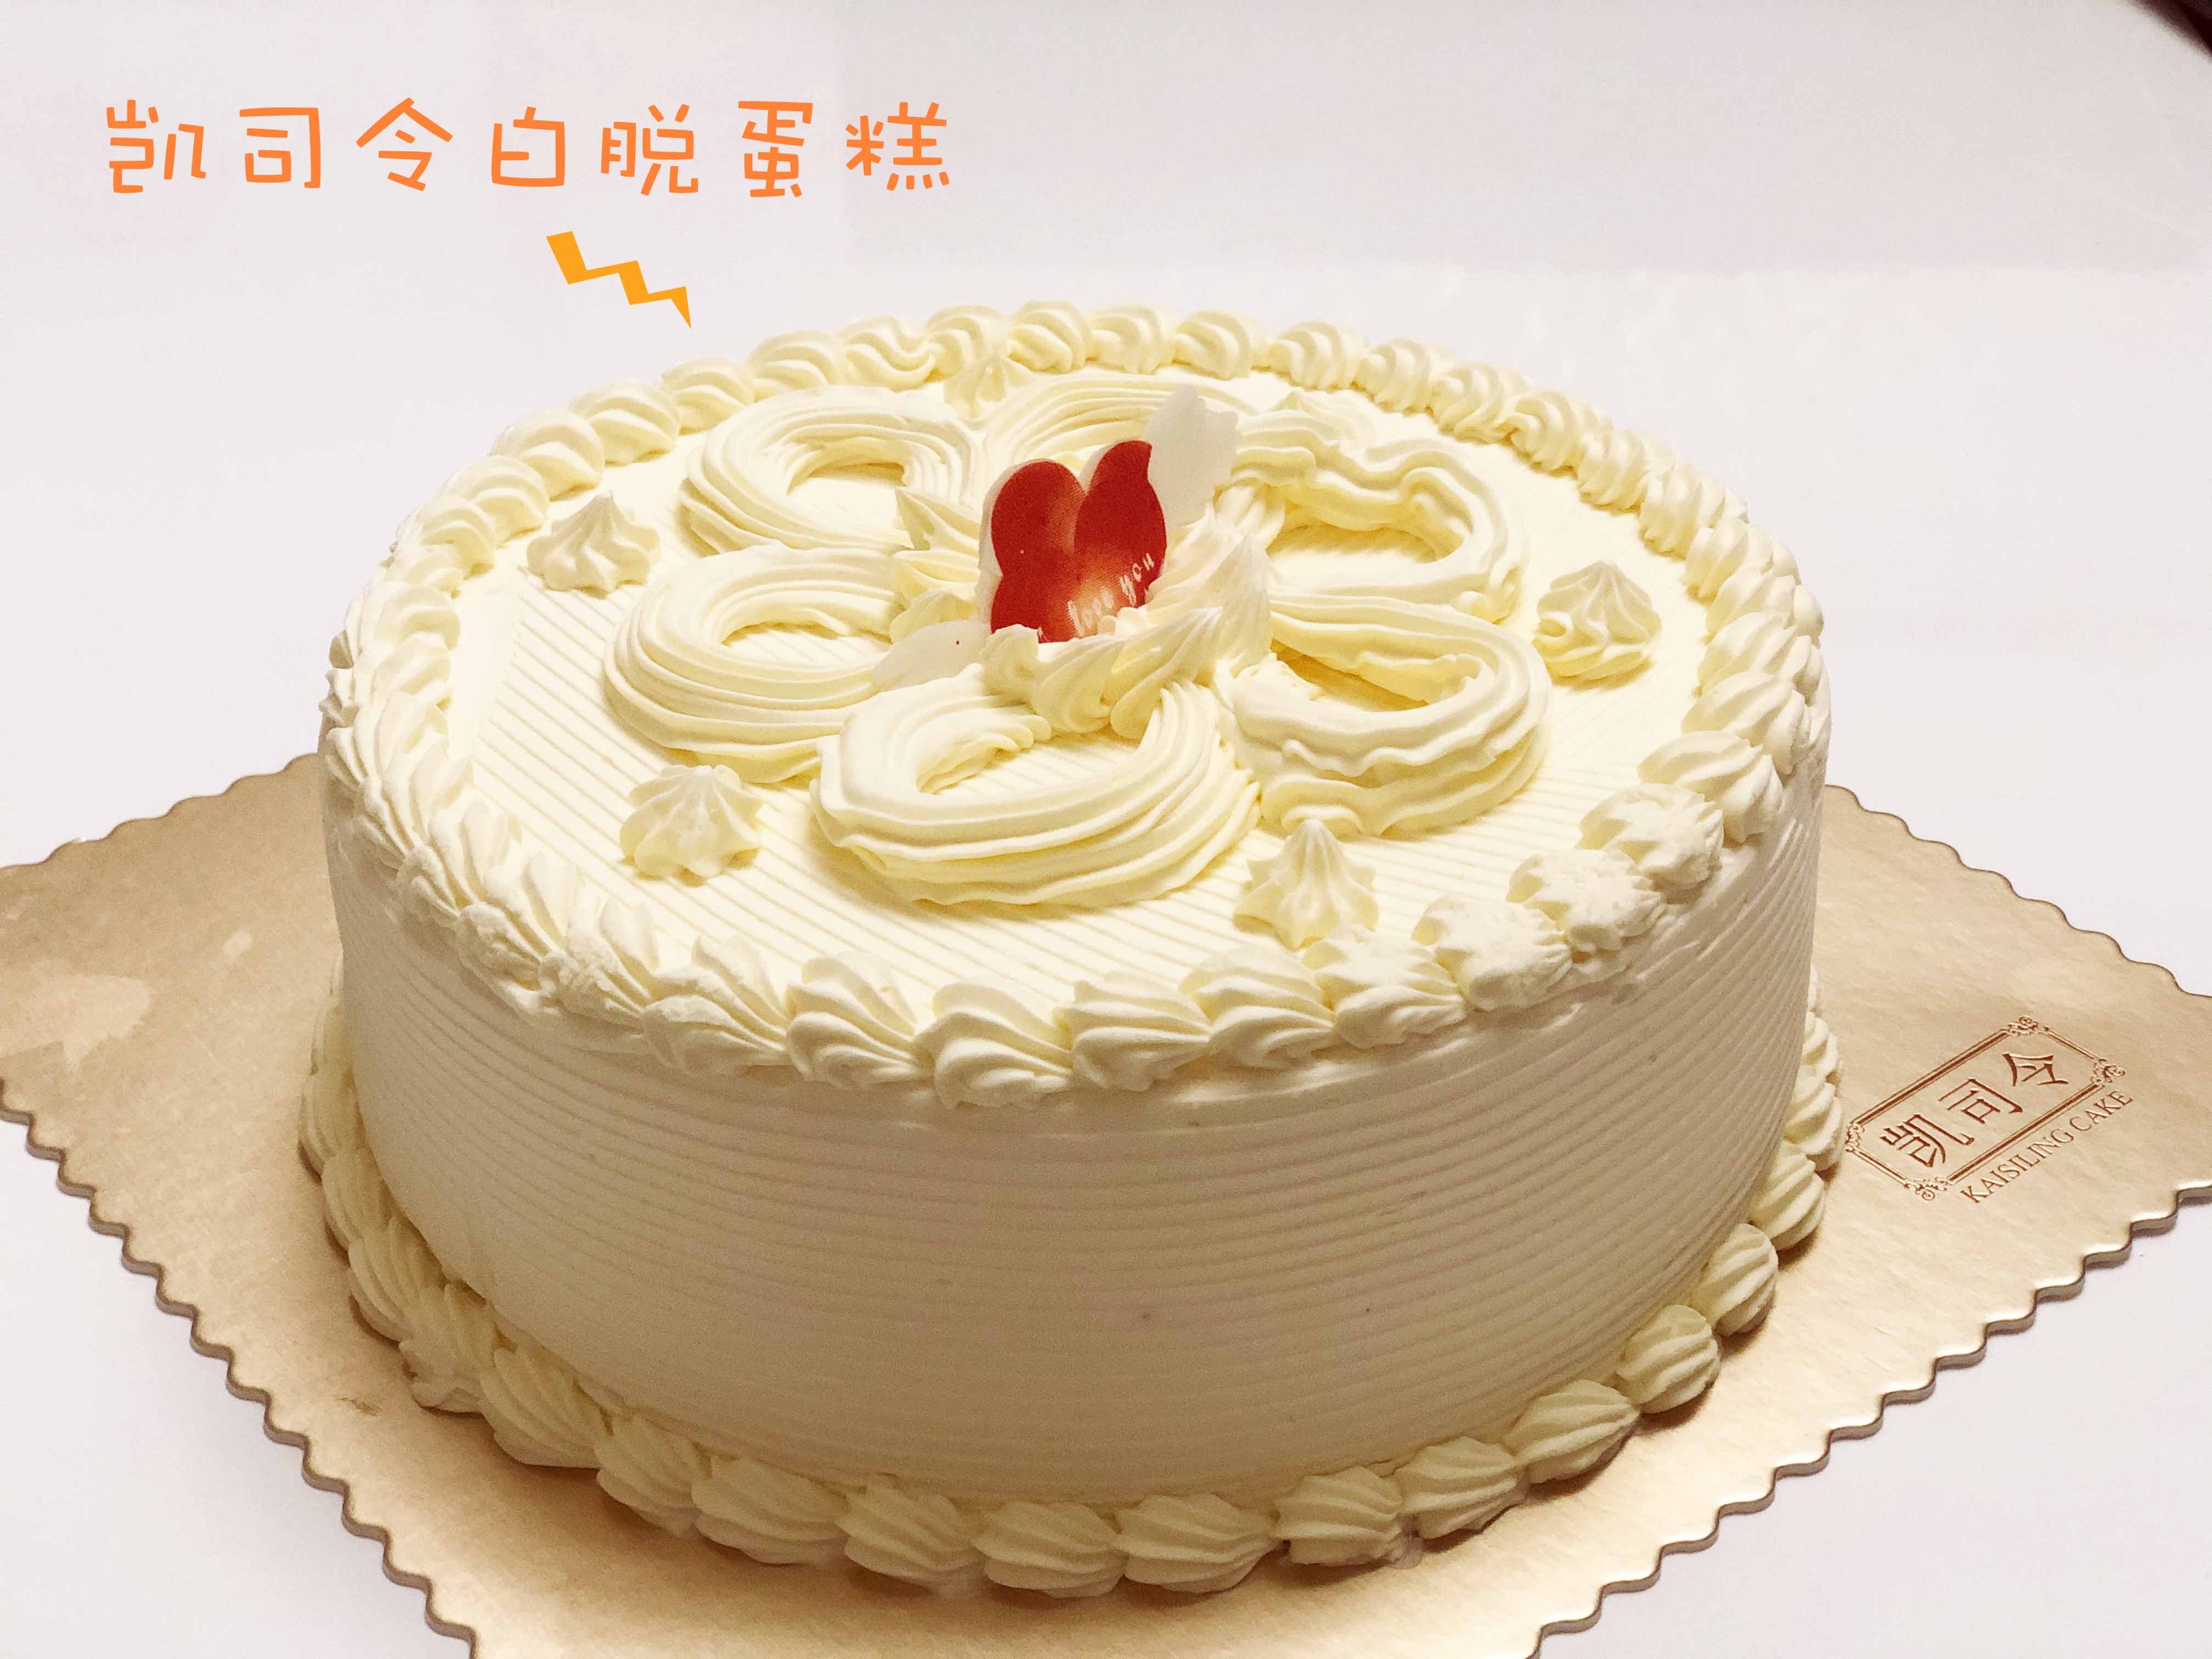 上海凯司令 招牌原味白脱老式奶油蛋糕硬奶油小时候味道 新鲜采购